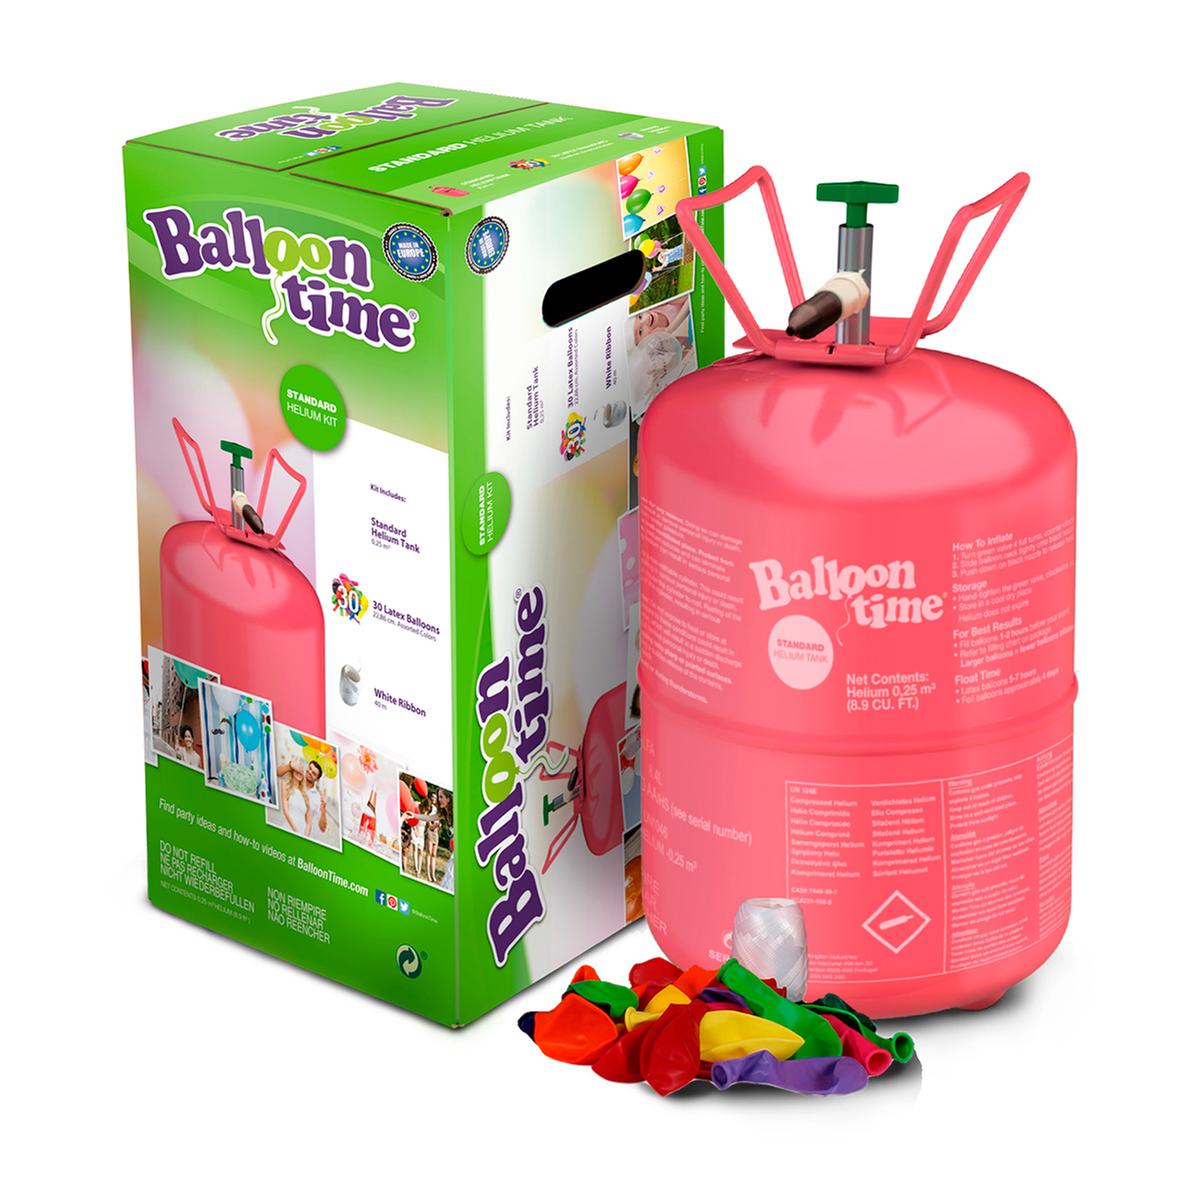 Ofertas globos y bombonas de helio al mejor precio